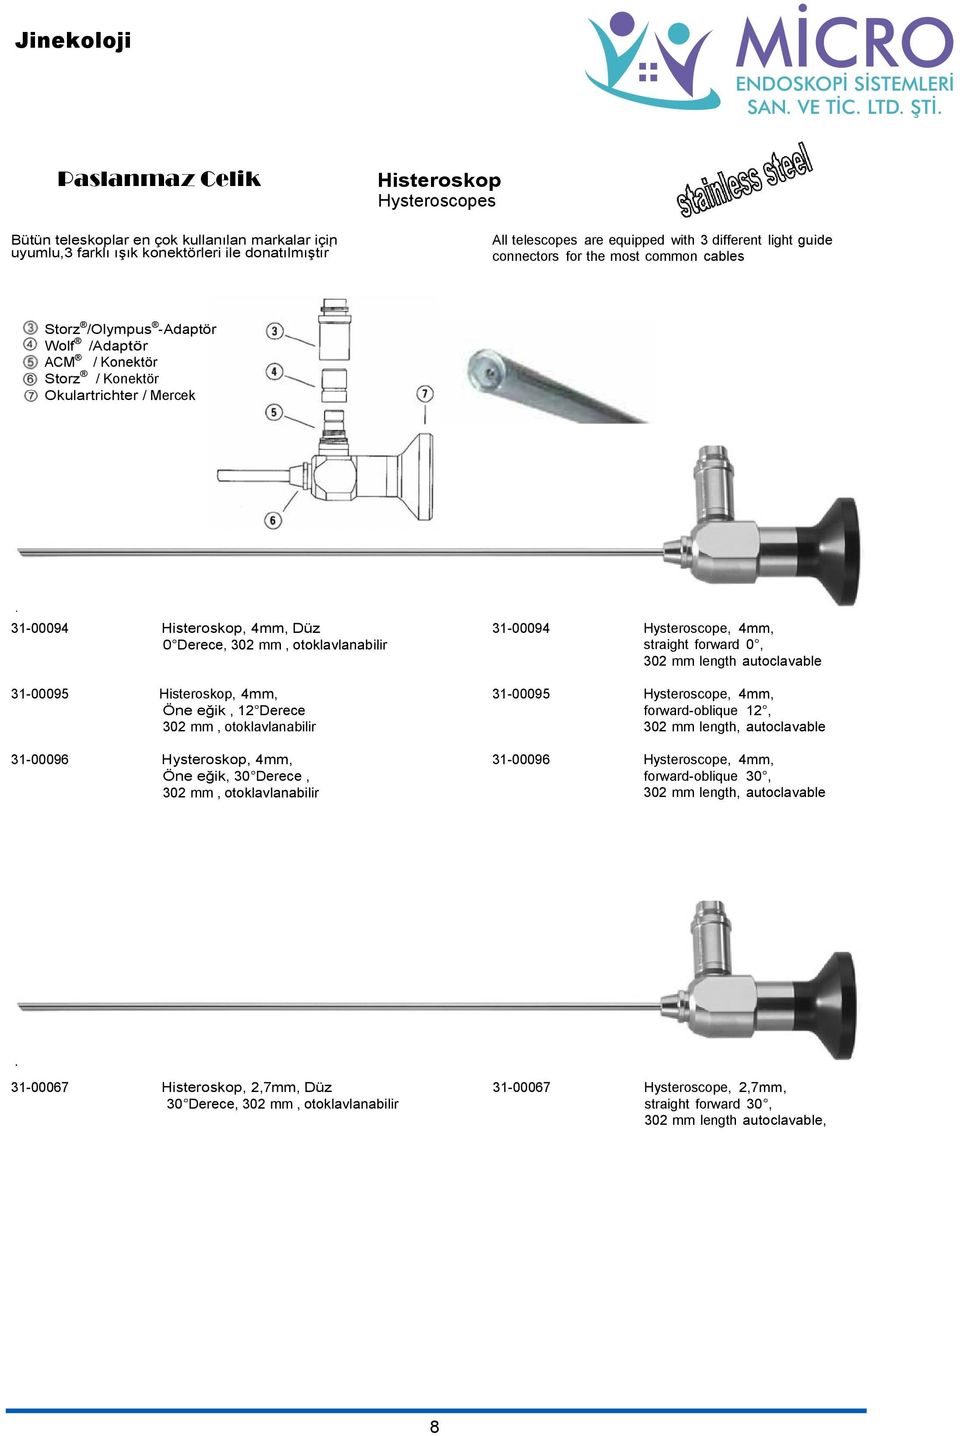 Histeroskop, 4mm, Öne eğik, 12 Derece 302 mm, otoklavlanabilir 31-00096 Hysteroskop, 4mm, Öne eğik, 30 Derece, 302 mm, otoklavlanabilir 31-00094 Hysteroscope, 4mm, straight forward 0, 302 mm length